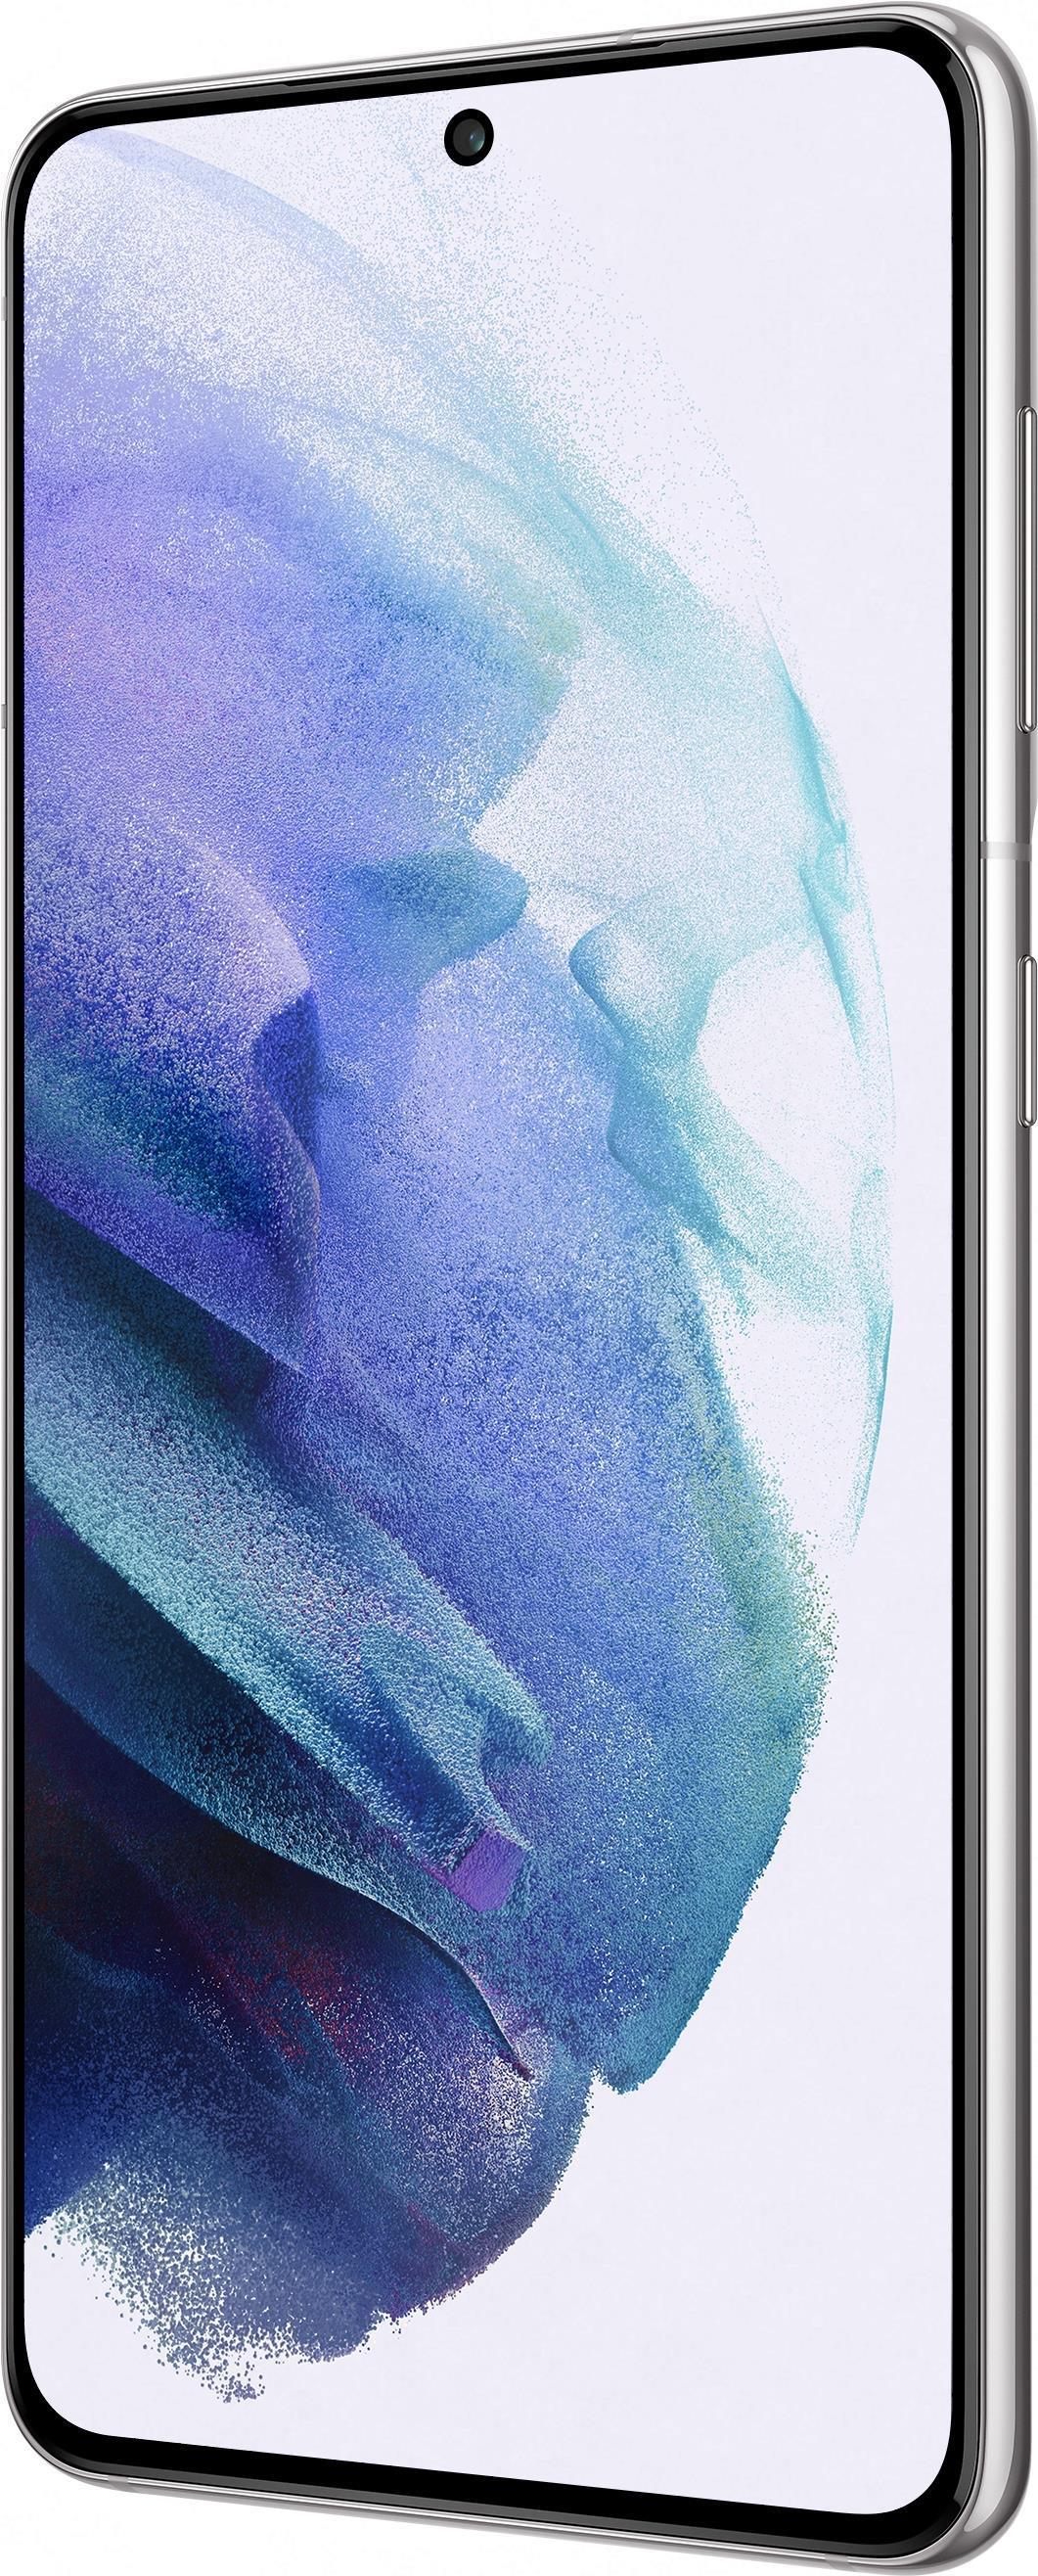 Samsung Galaxy S21 5G SM-G991B 15,8 cm (6.2 Zoll) Dual-SIM Android 11 USB Typ-C 8 GB 128 GB 4000 mAh Weiß (SM-G991BZWDEUB) (geöffnet)